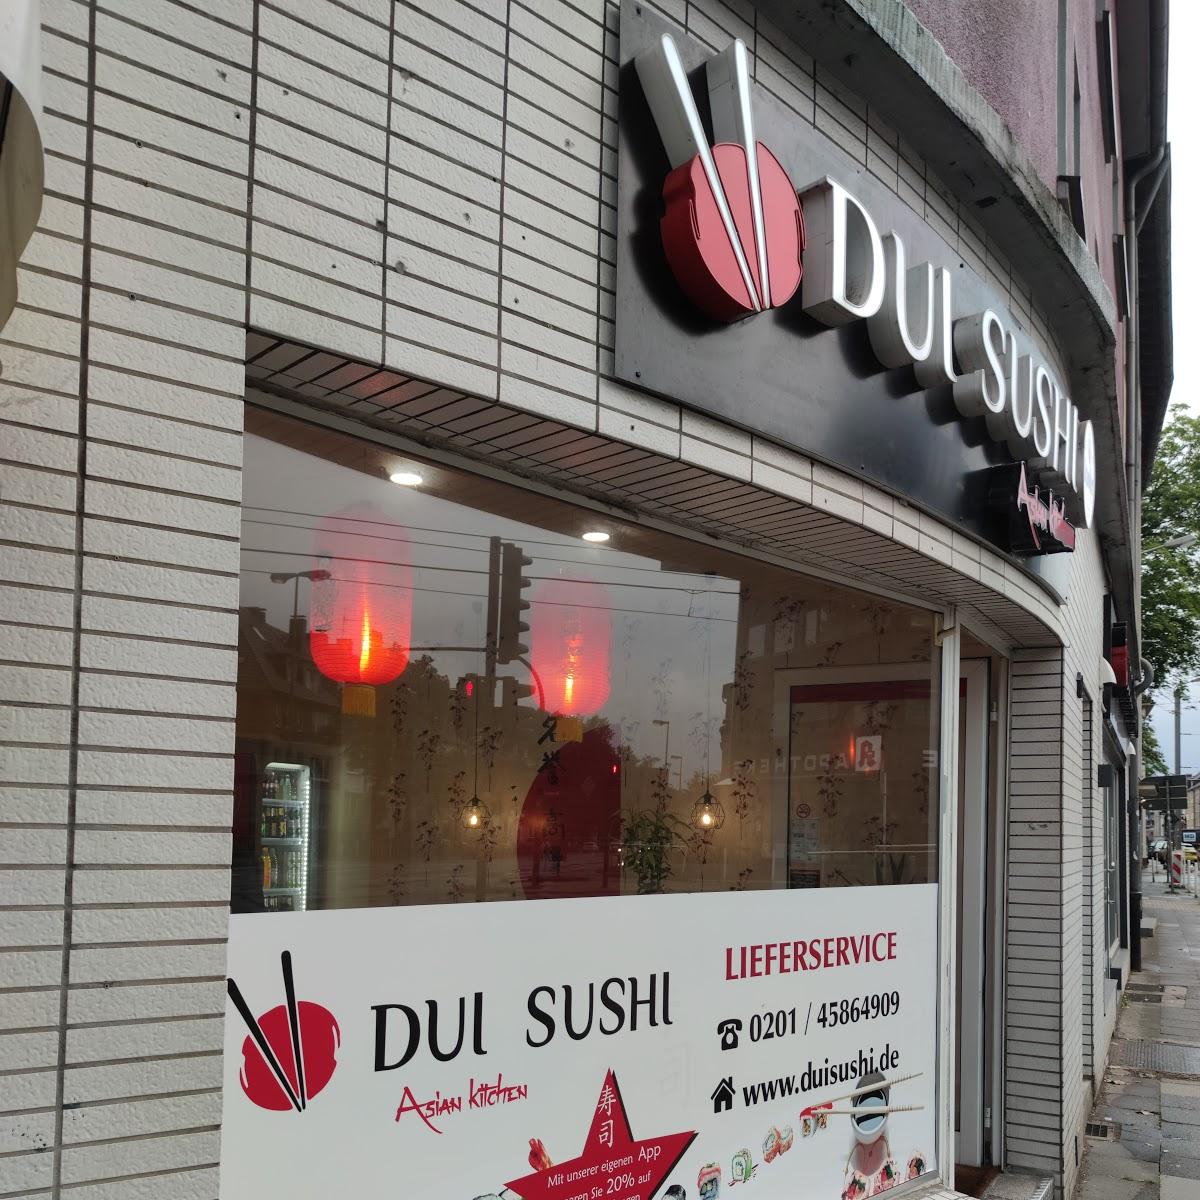 Restaurant "Dui Sushi Restaurant in" in Essen